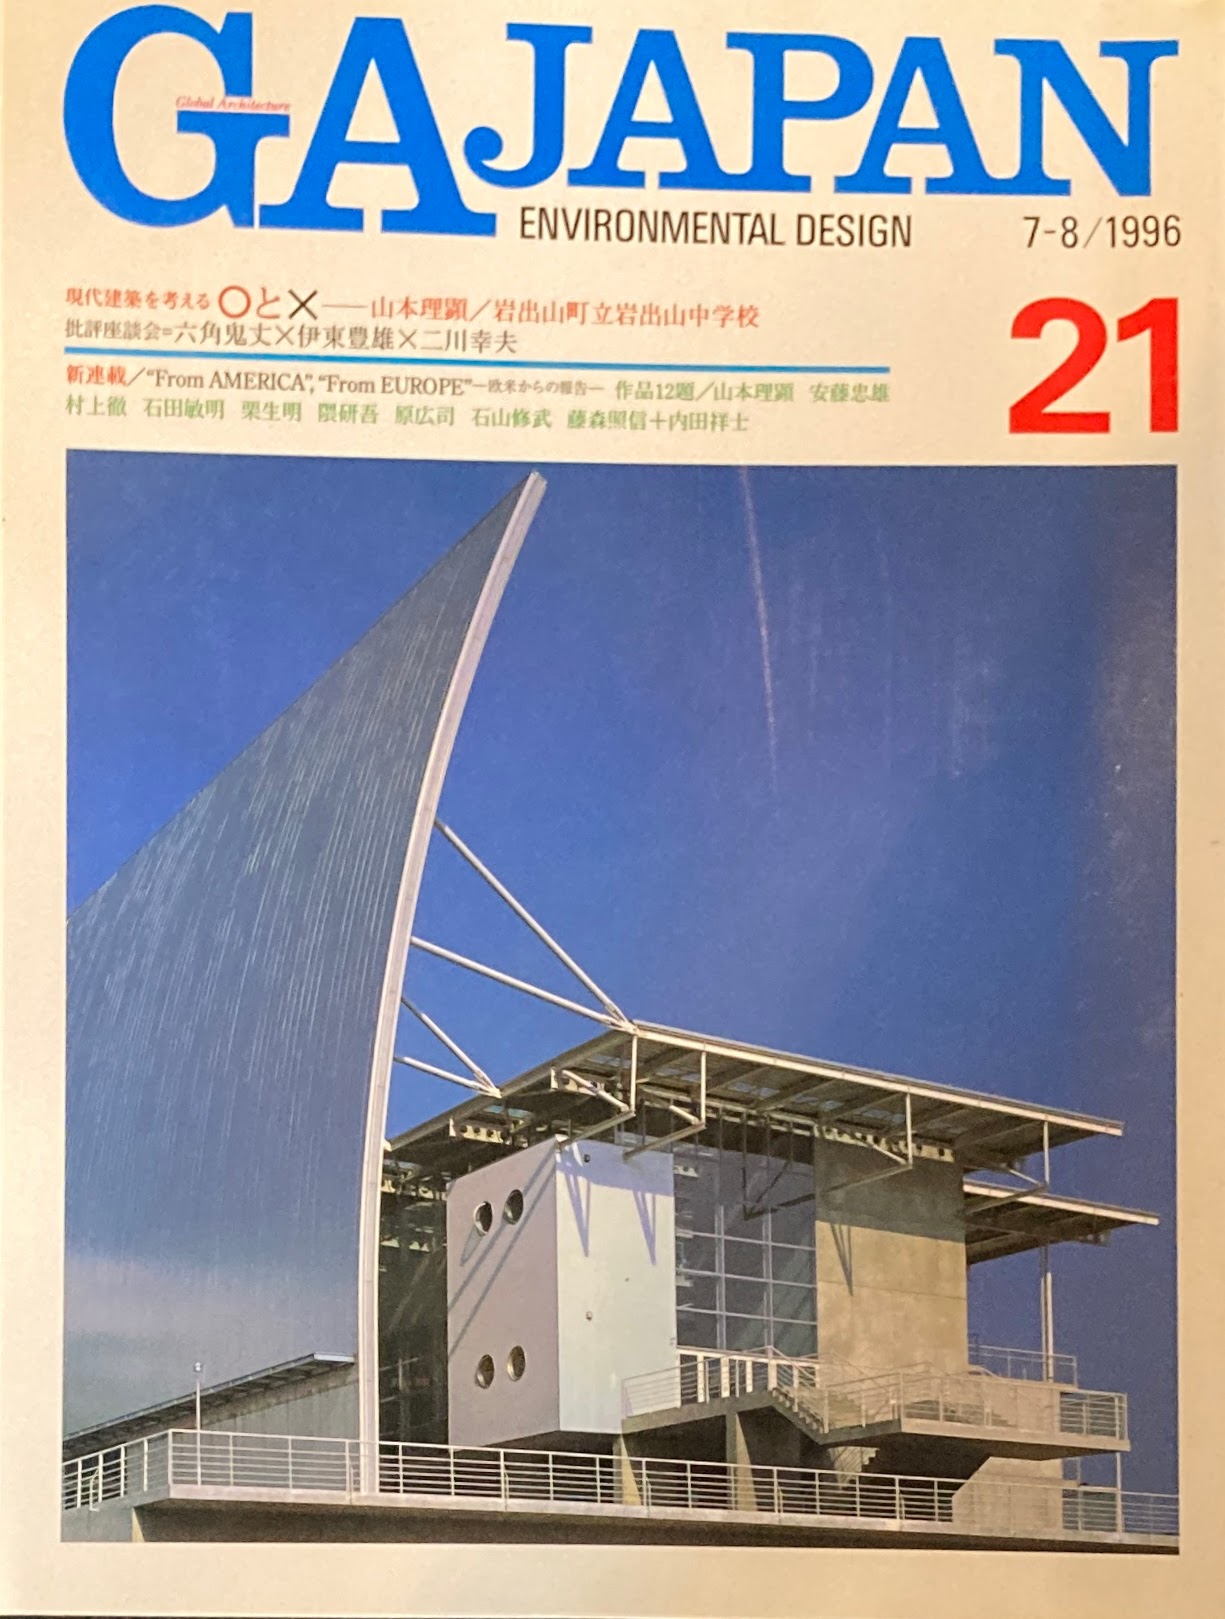 GA JAPAN 21 　1996年/7-8　現代建築を考える〇と☓　山本理顕　岩出山町立岩出山中学校　